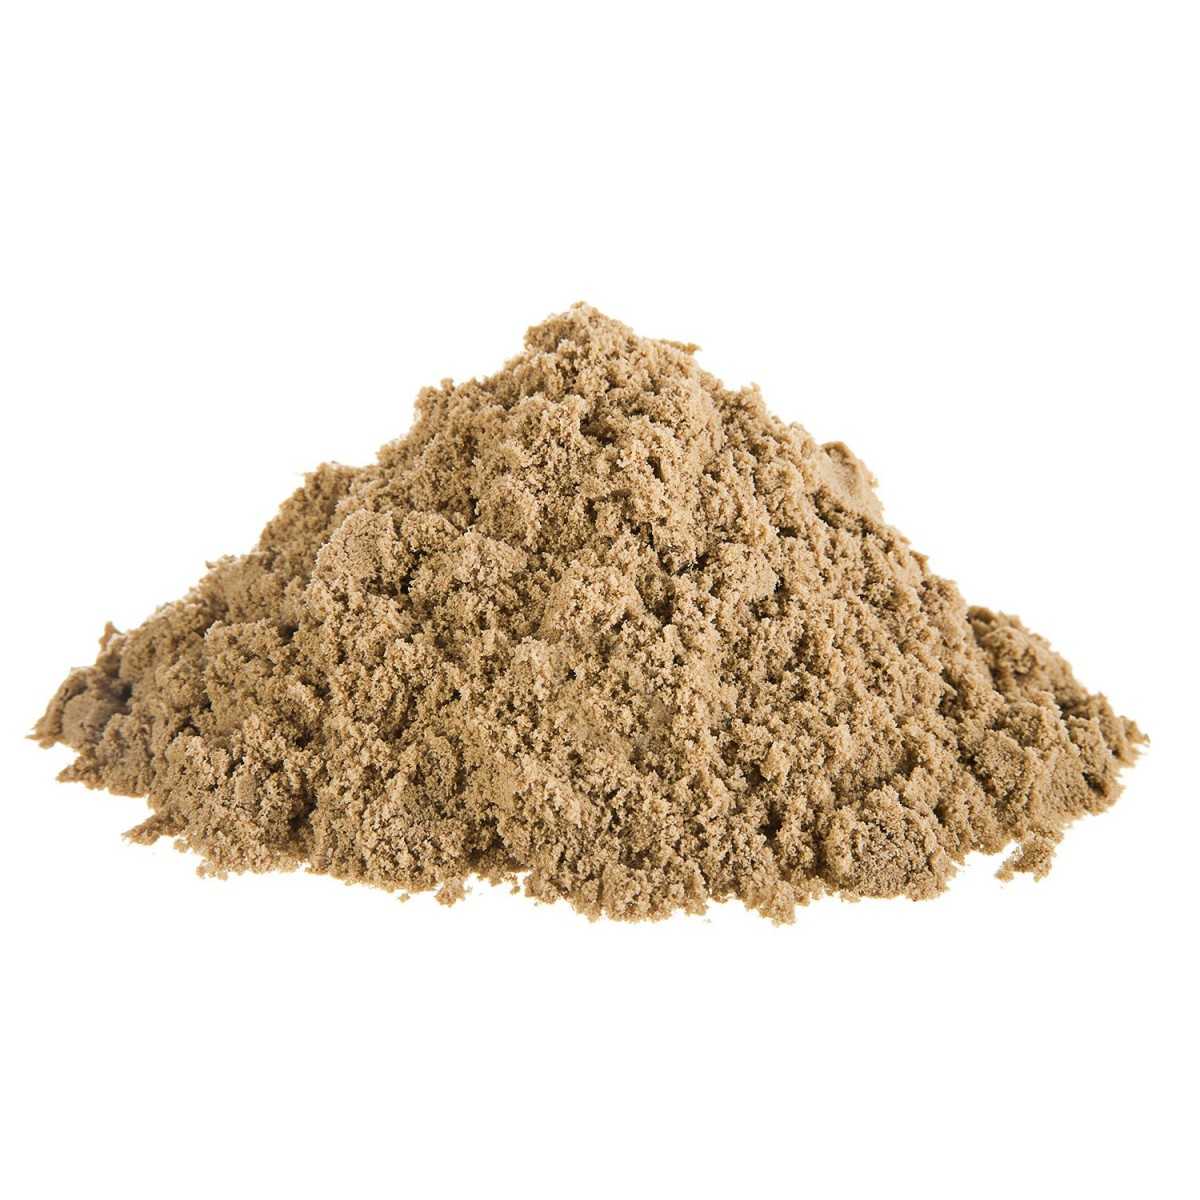 Технические характеристики и свойства строительного песка Особенности добычи песка Преимущества и недостатки